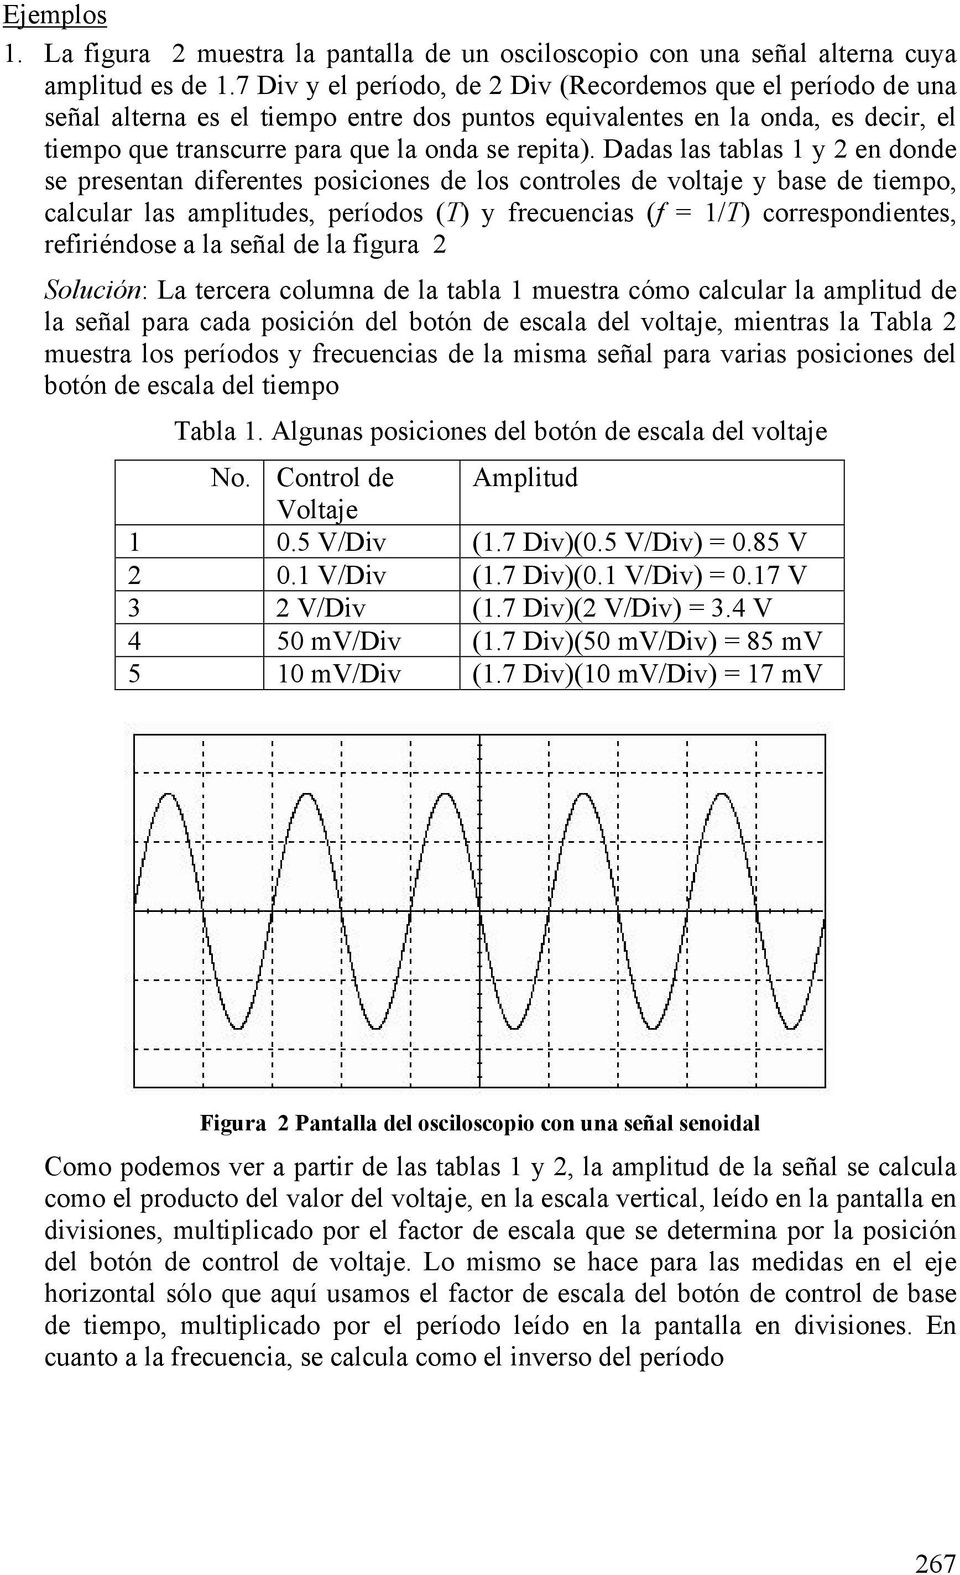 Dadas las tablas 1 y 2 en donde se presentan diferentes posiciones de los controles de voltaje y base de tiempo, calcular las amplitudes, períodos (T) y frecuencias (f = 1/T) correspondientes,